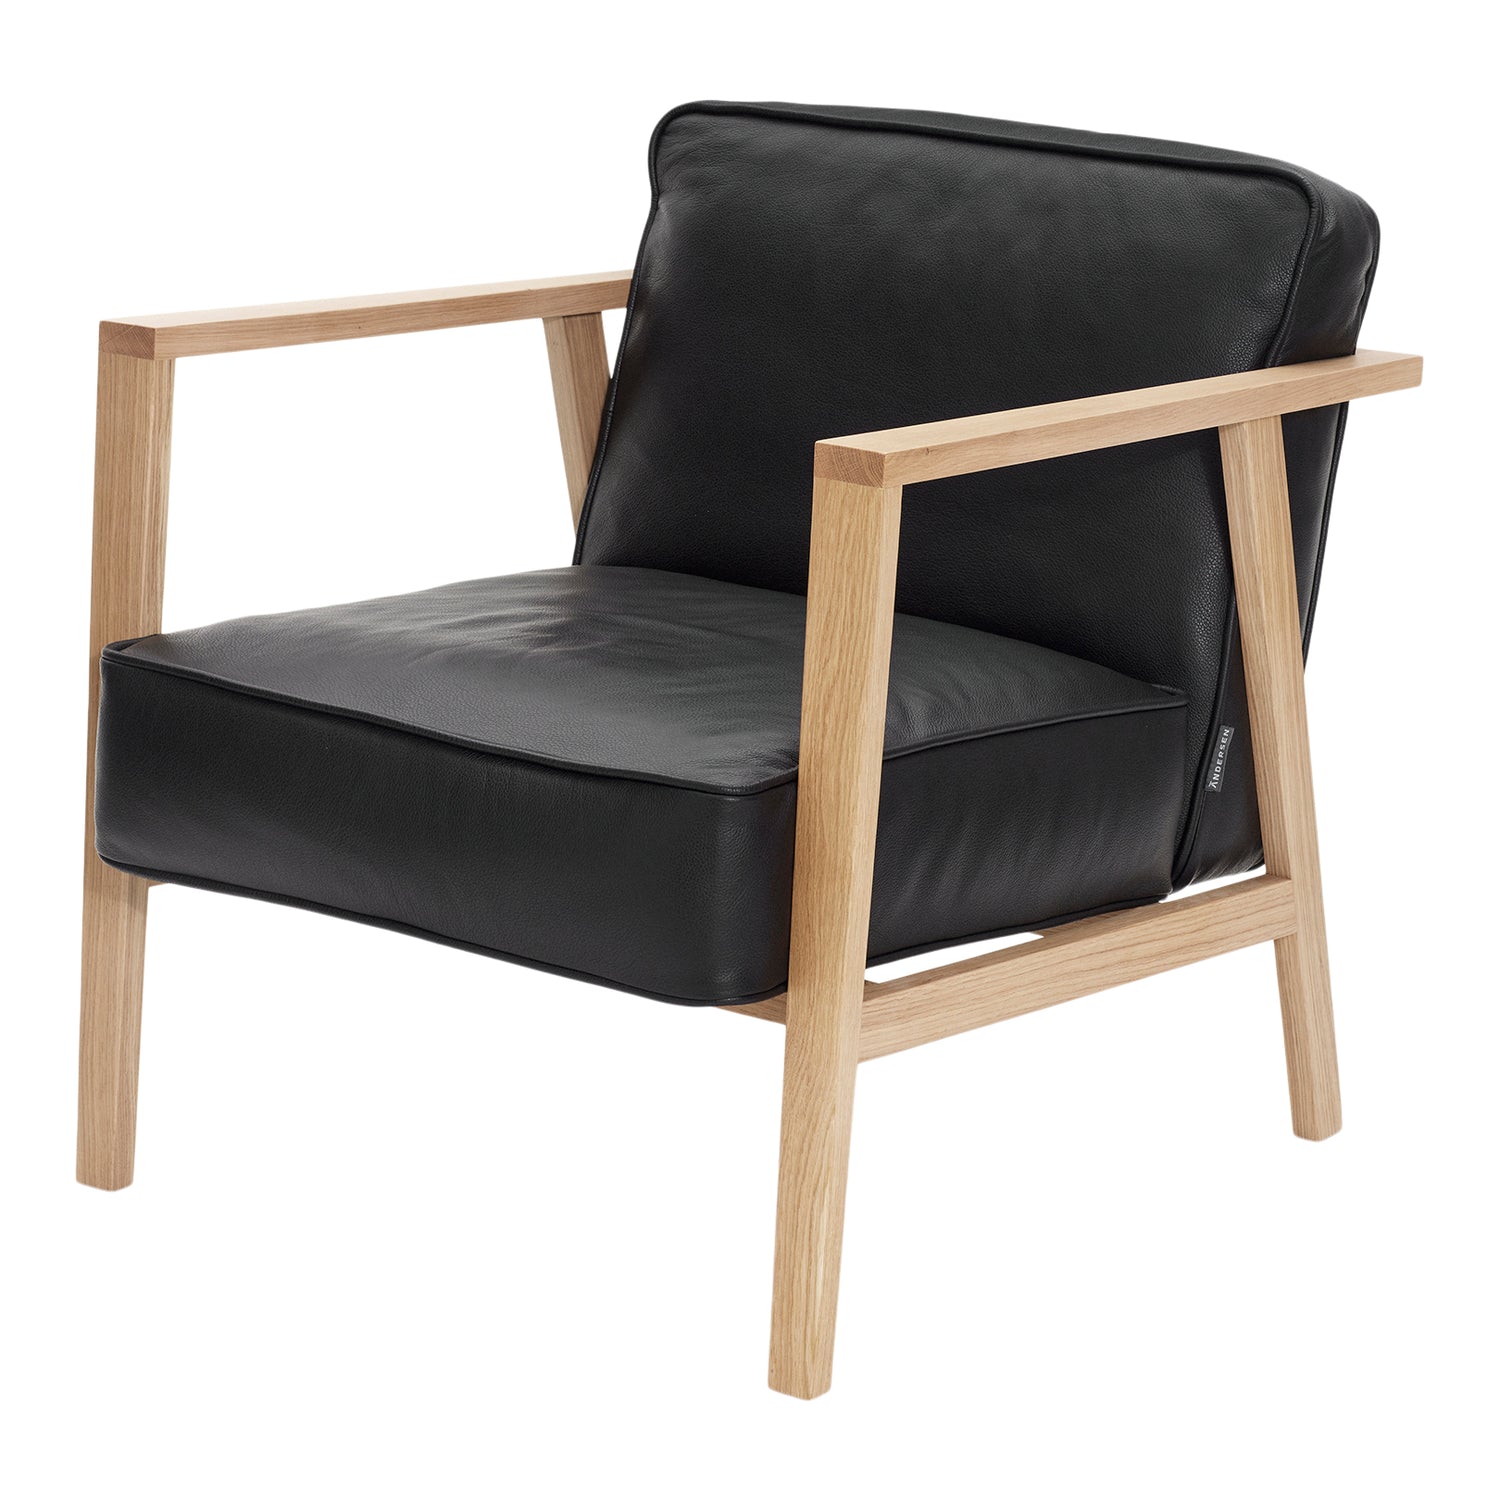 Móveis Andersen - Cadeira LC1 Lounge - Couro/moldura preta em carvalho